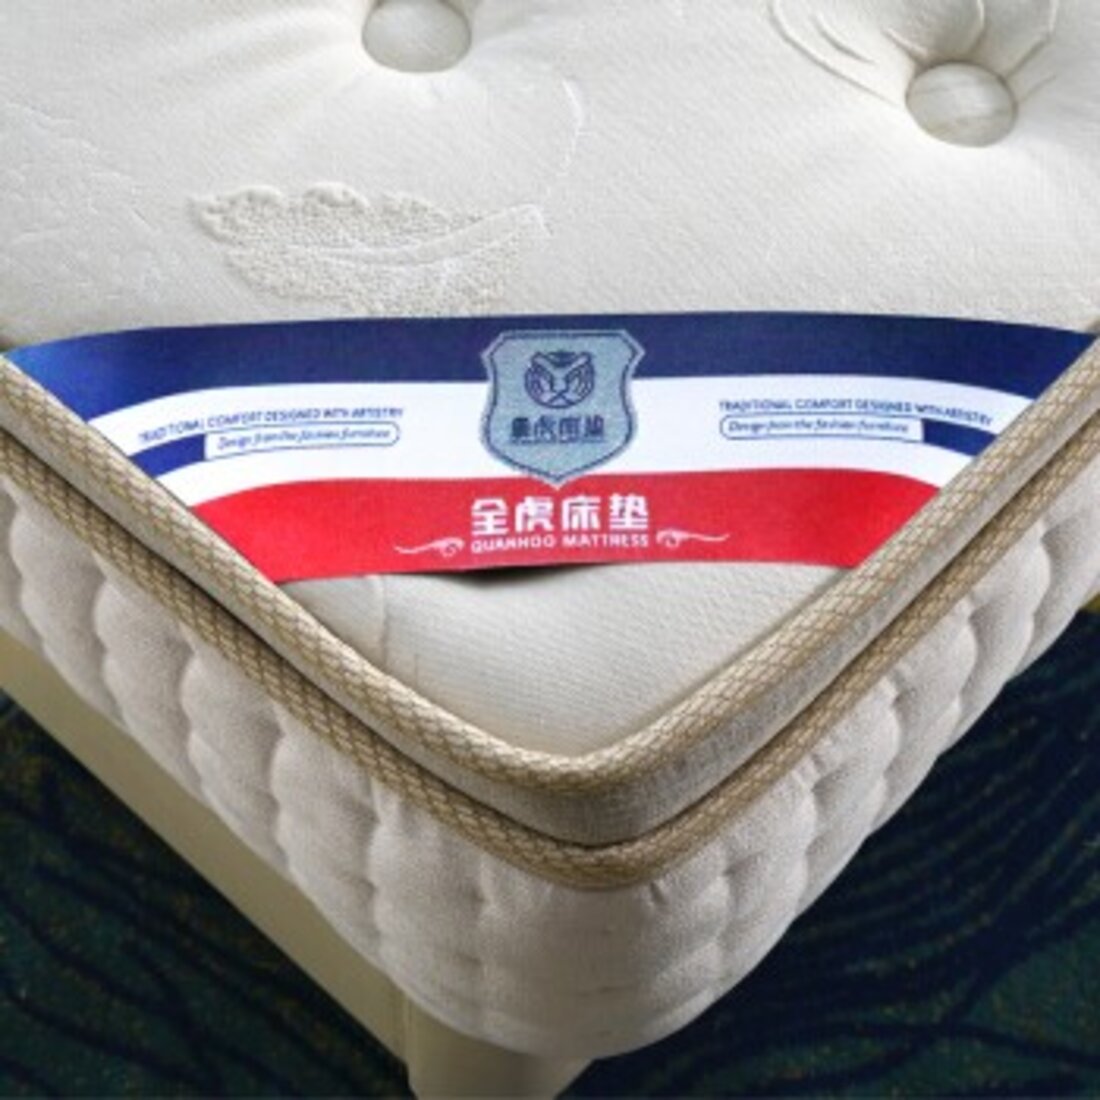 凝胶记忆棉独立袋分区弹簧床垫ZH2103-MT-FP32 | 爱的床垫,最专业的品牌床垫代工专家,酒店床垫十大品牌厂家,弹簧床垫代加工,民用 ...